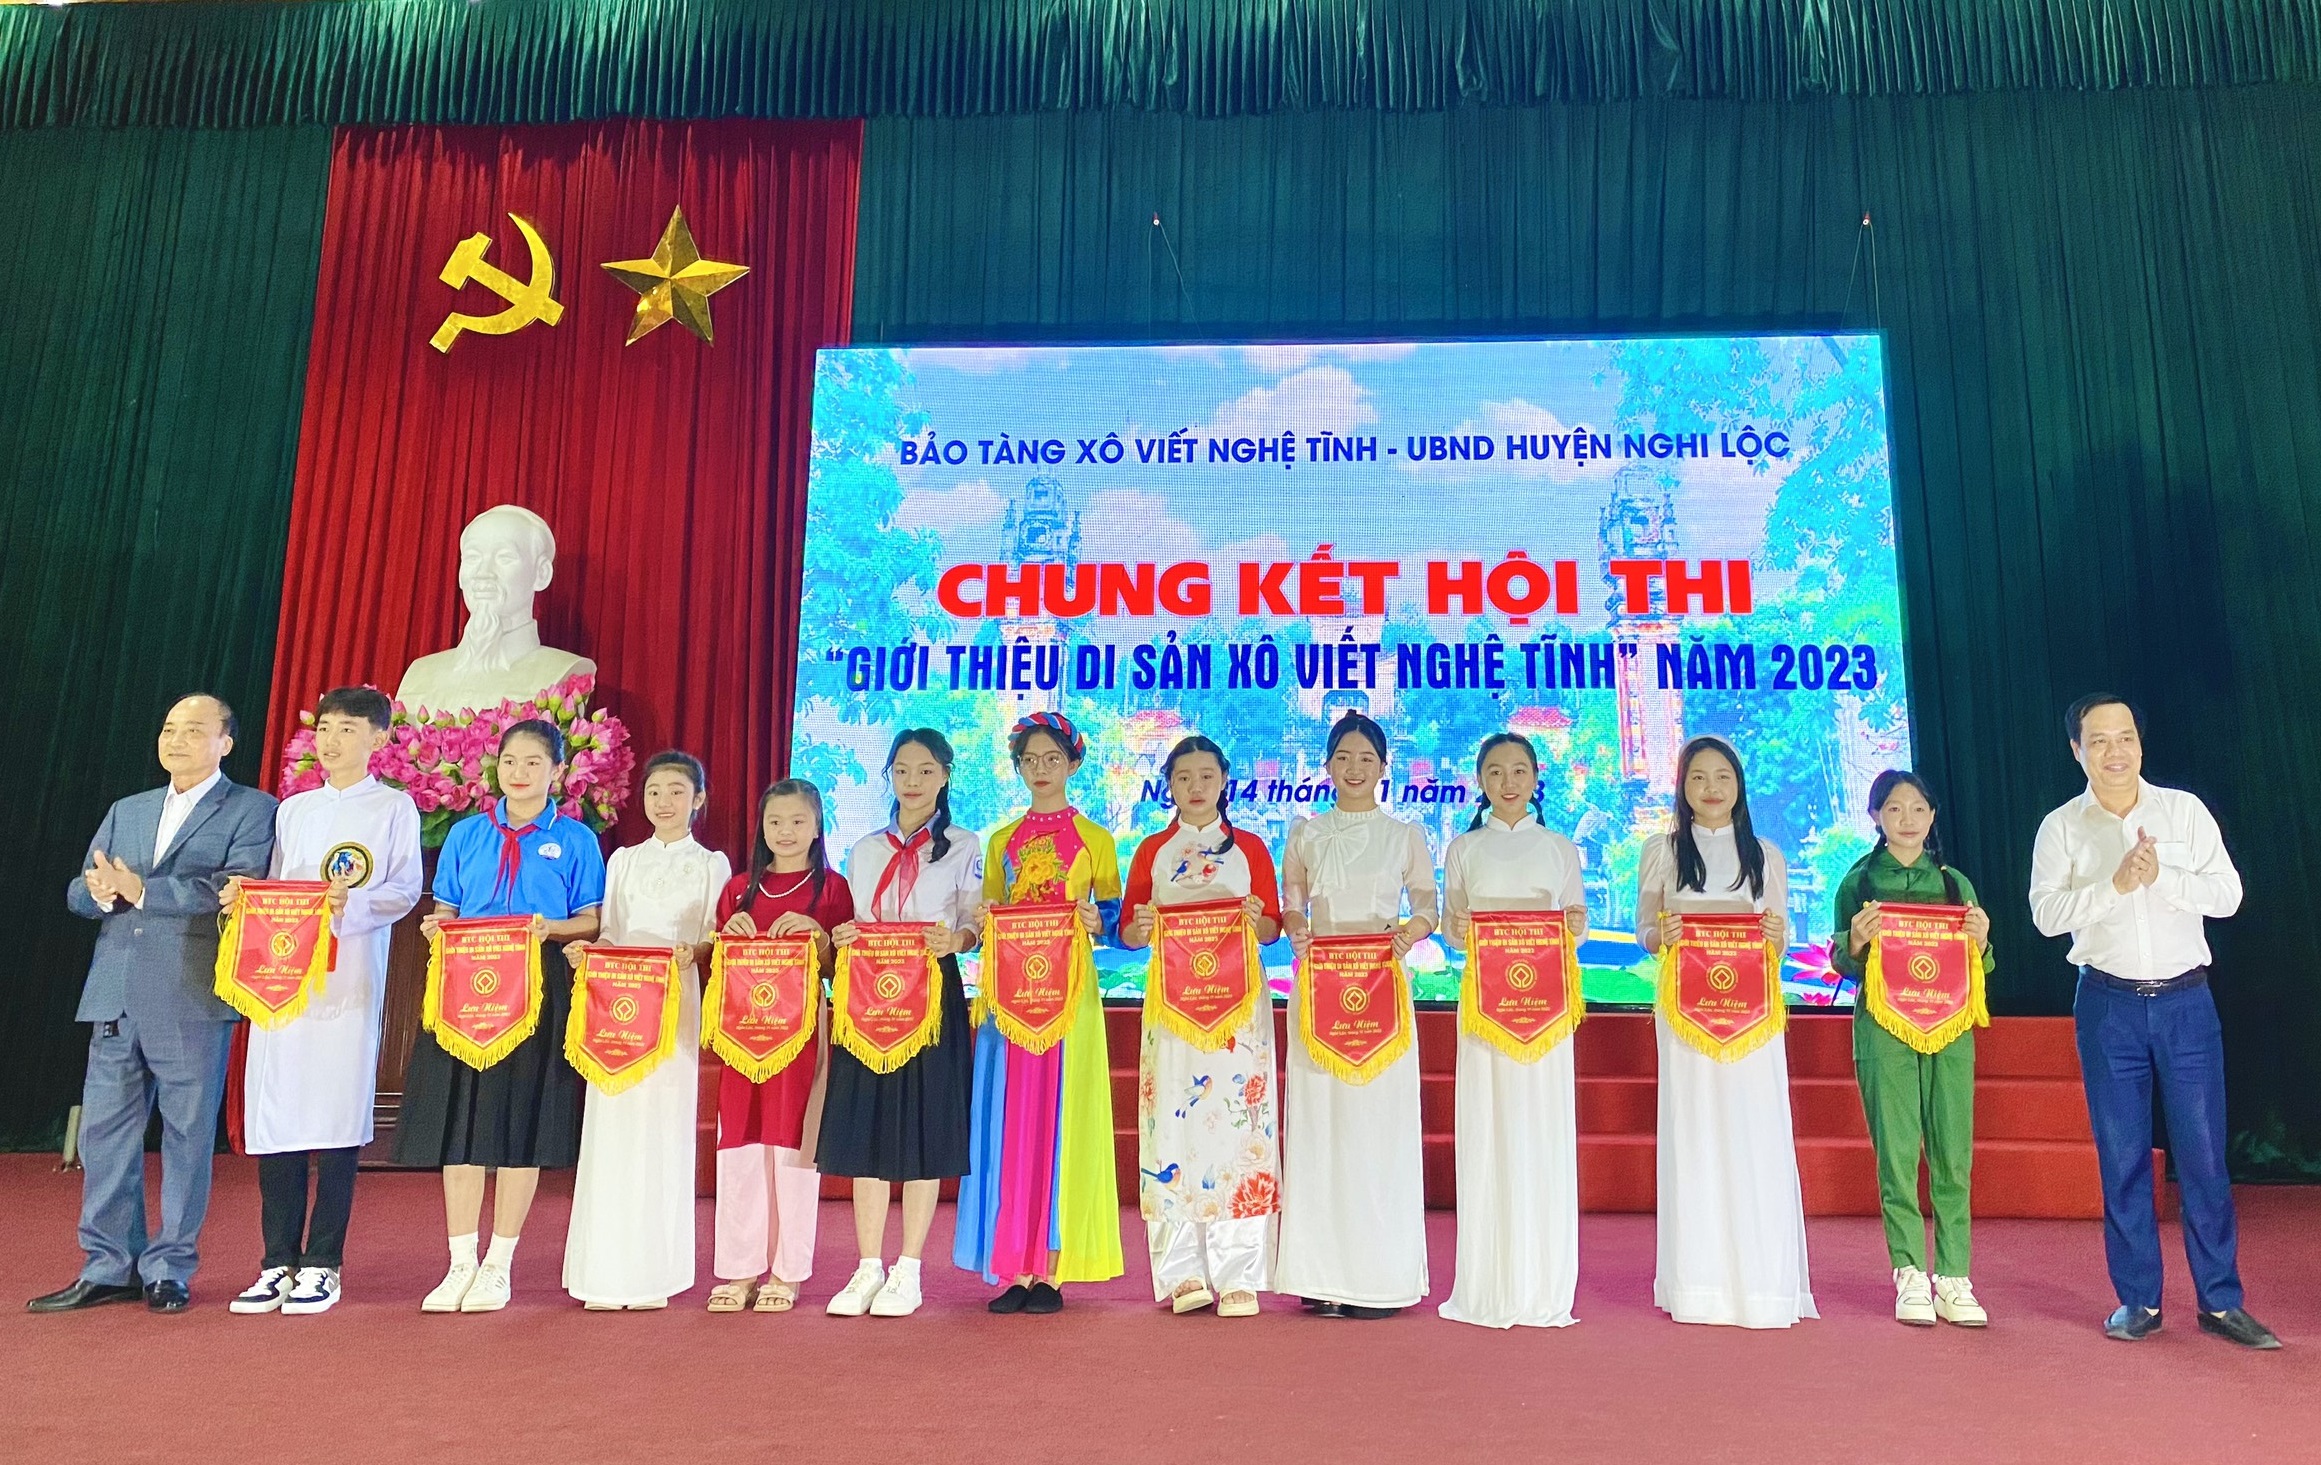 Chung kết Hội thi “Giới thiệu di sản Xô viết Nghệ Tĩnh” huyện Nghi Lộc năm 2023